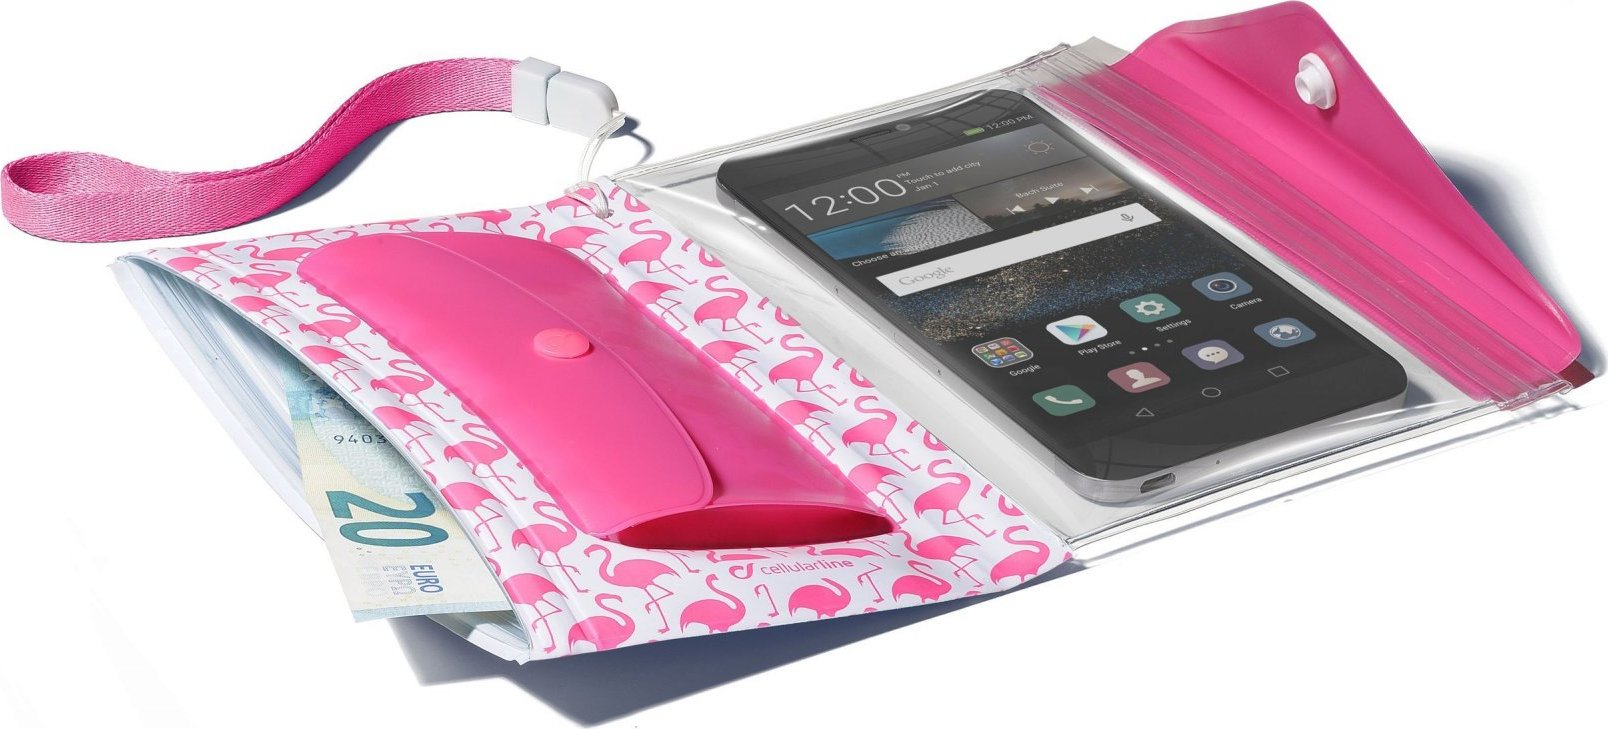 Voděodolné pouzdro s peněženkou Cellularline Voyager Pochette pro telefony do velikosti 5,2", růžové